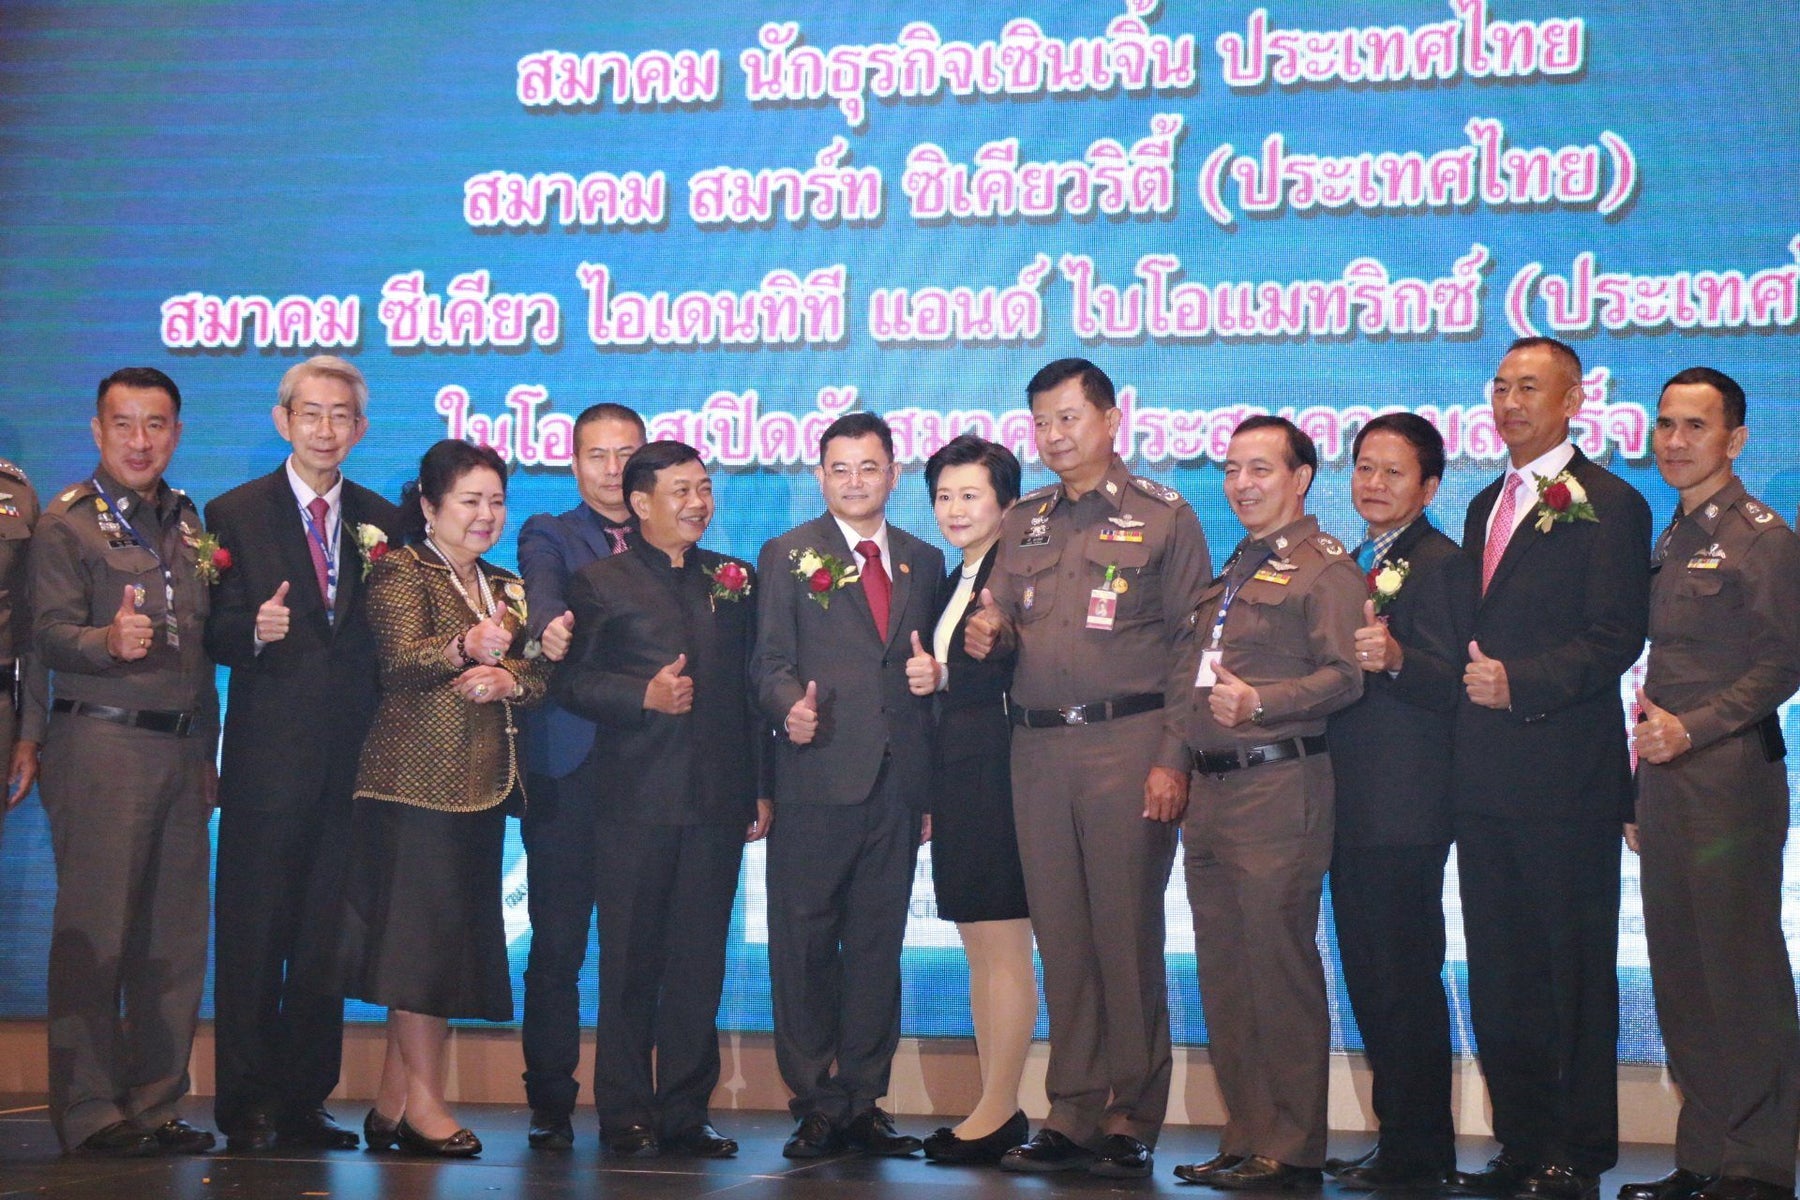 พล.ต.อ.กวี สุภานันท์ ที่ปรึกษา (สบ10) ร่วมเป็นเกียรติในในงานเปิดตัวสมาคมสมาร์ท ซีเคียวริตี้ (ประเทศไทย) และสมาคม ซีเคียว ไอเดนทีที แอนด์ ไบโอแมทริกซ์ (ประเทศไทย)